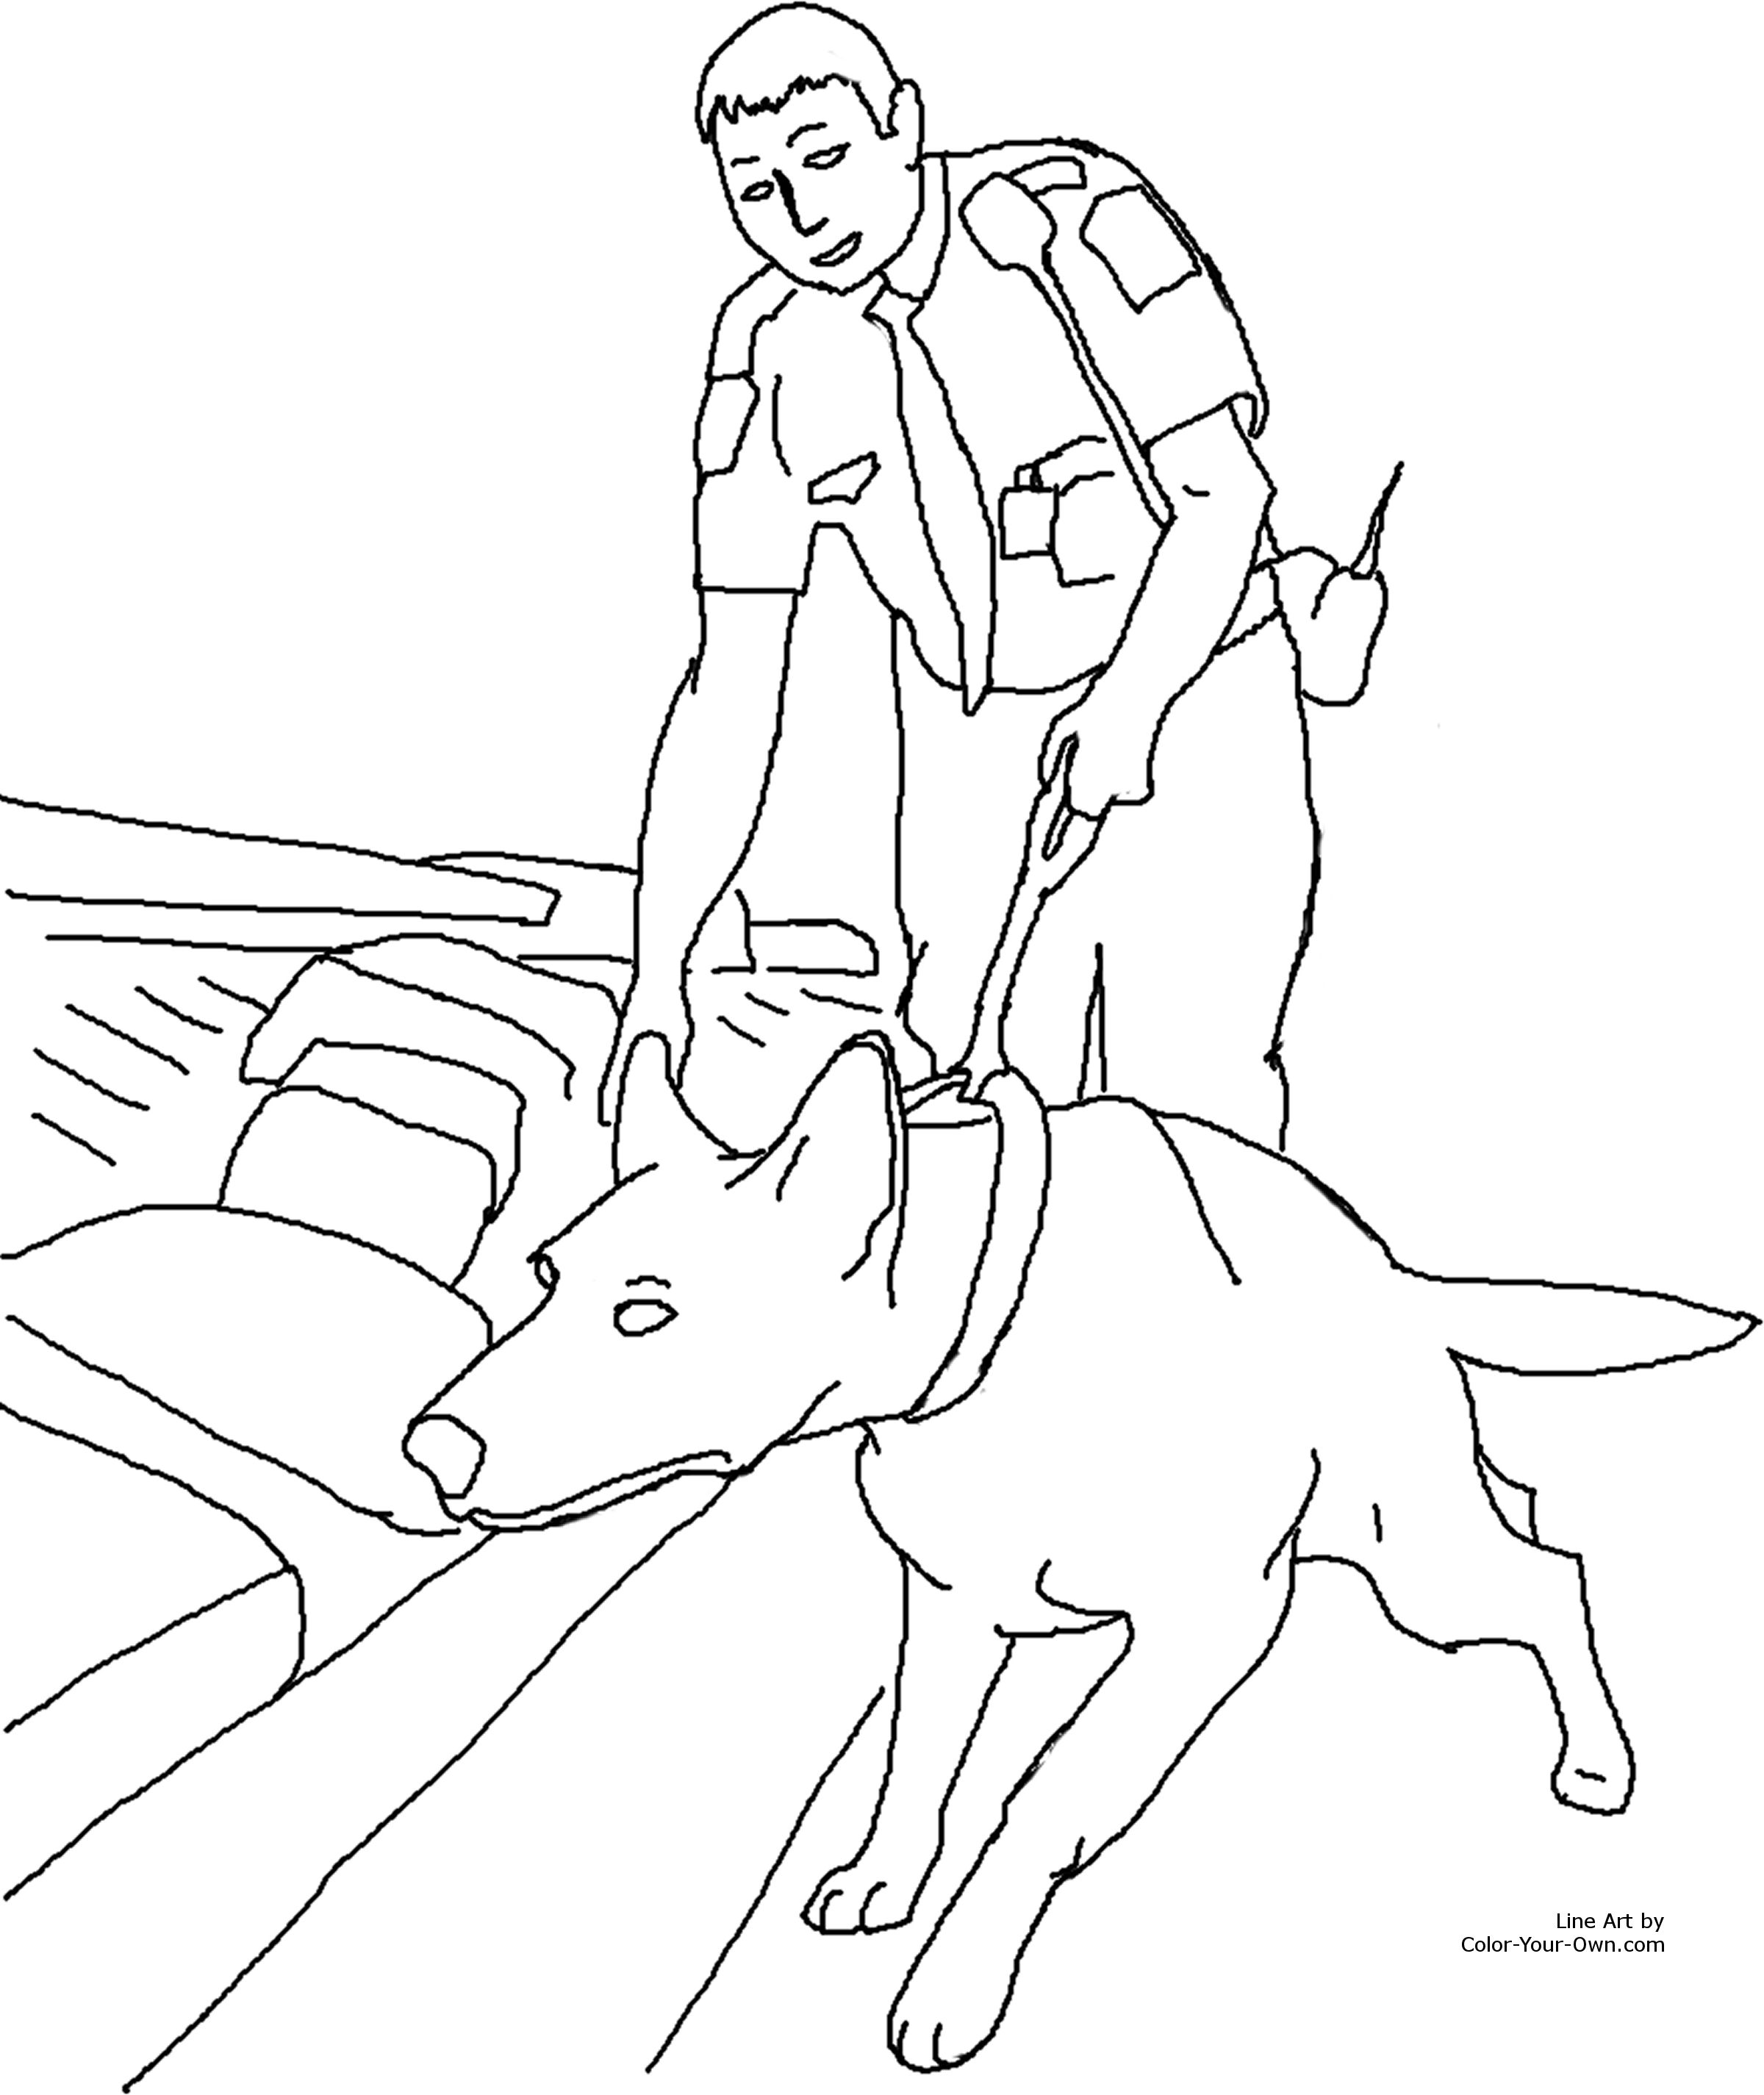 La sicurezza con cane in aeroporto colora il disegno